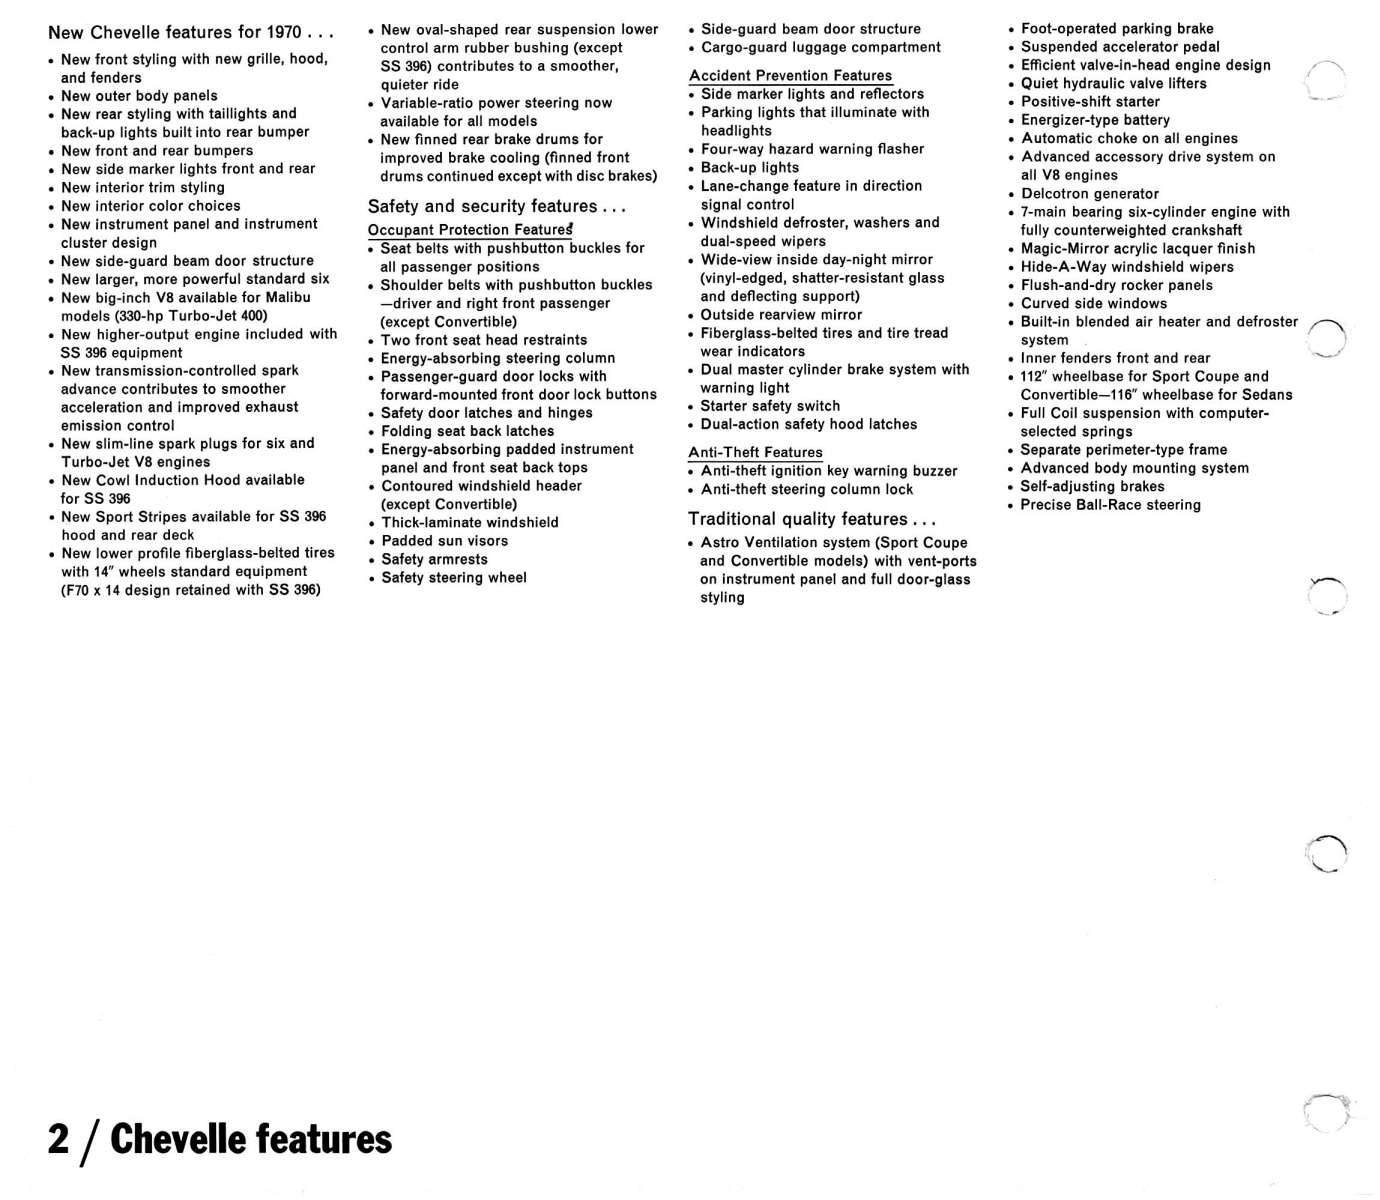 1970_Chevrolet_Dealer_Album-03-02